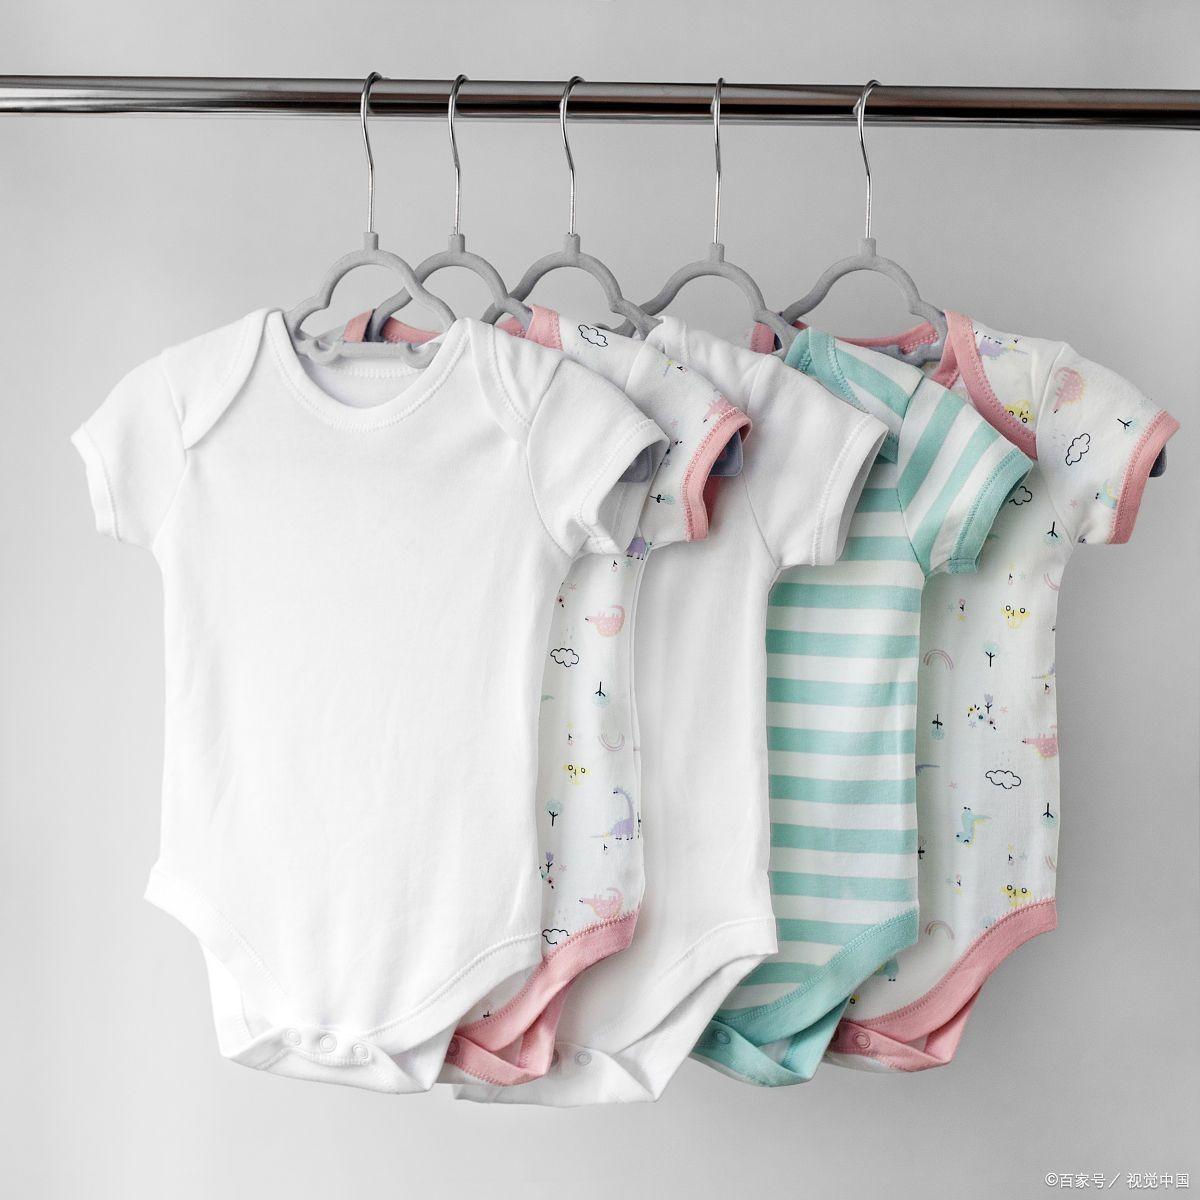 【新生儿】如何为新生儿准备合适的衣服？